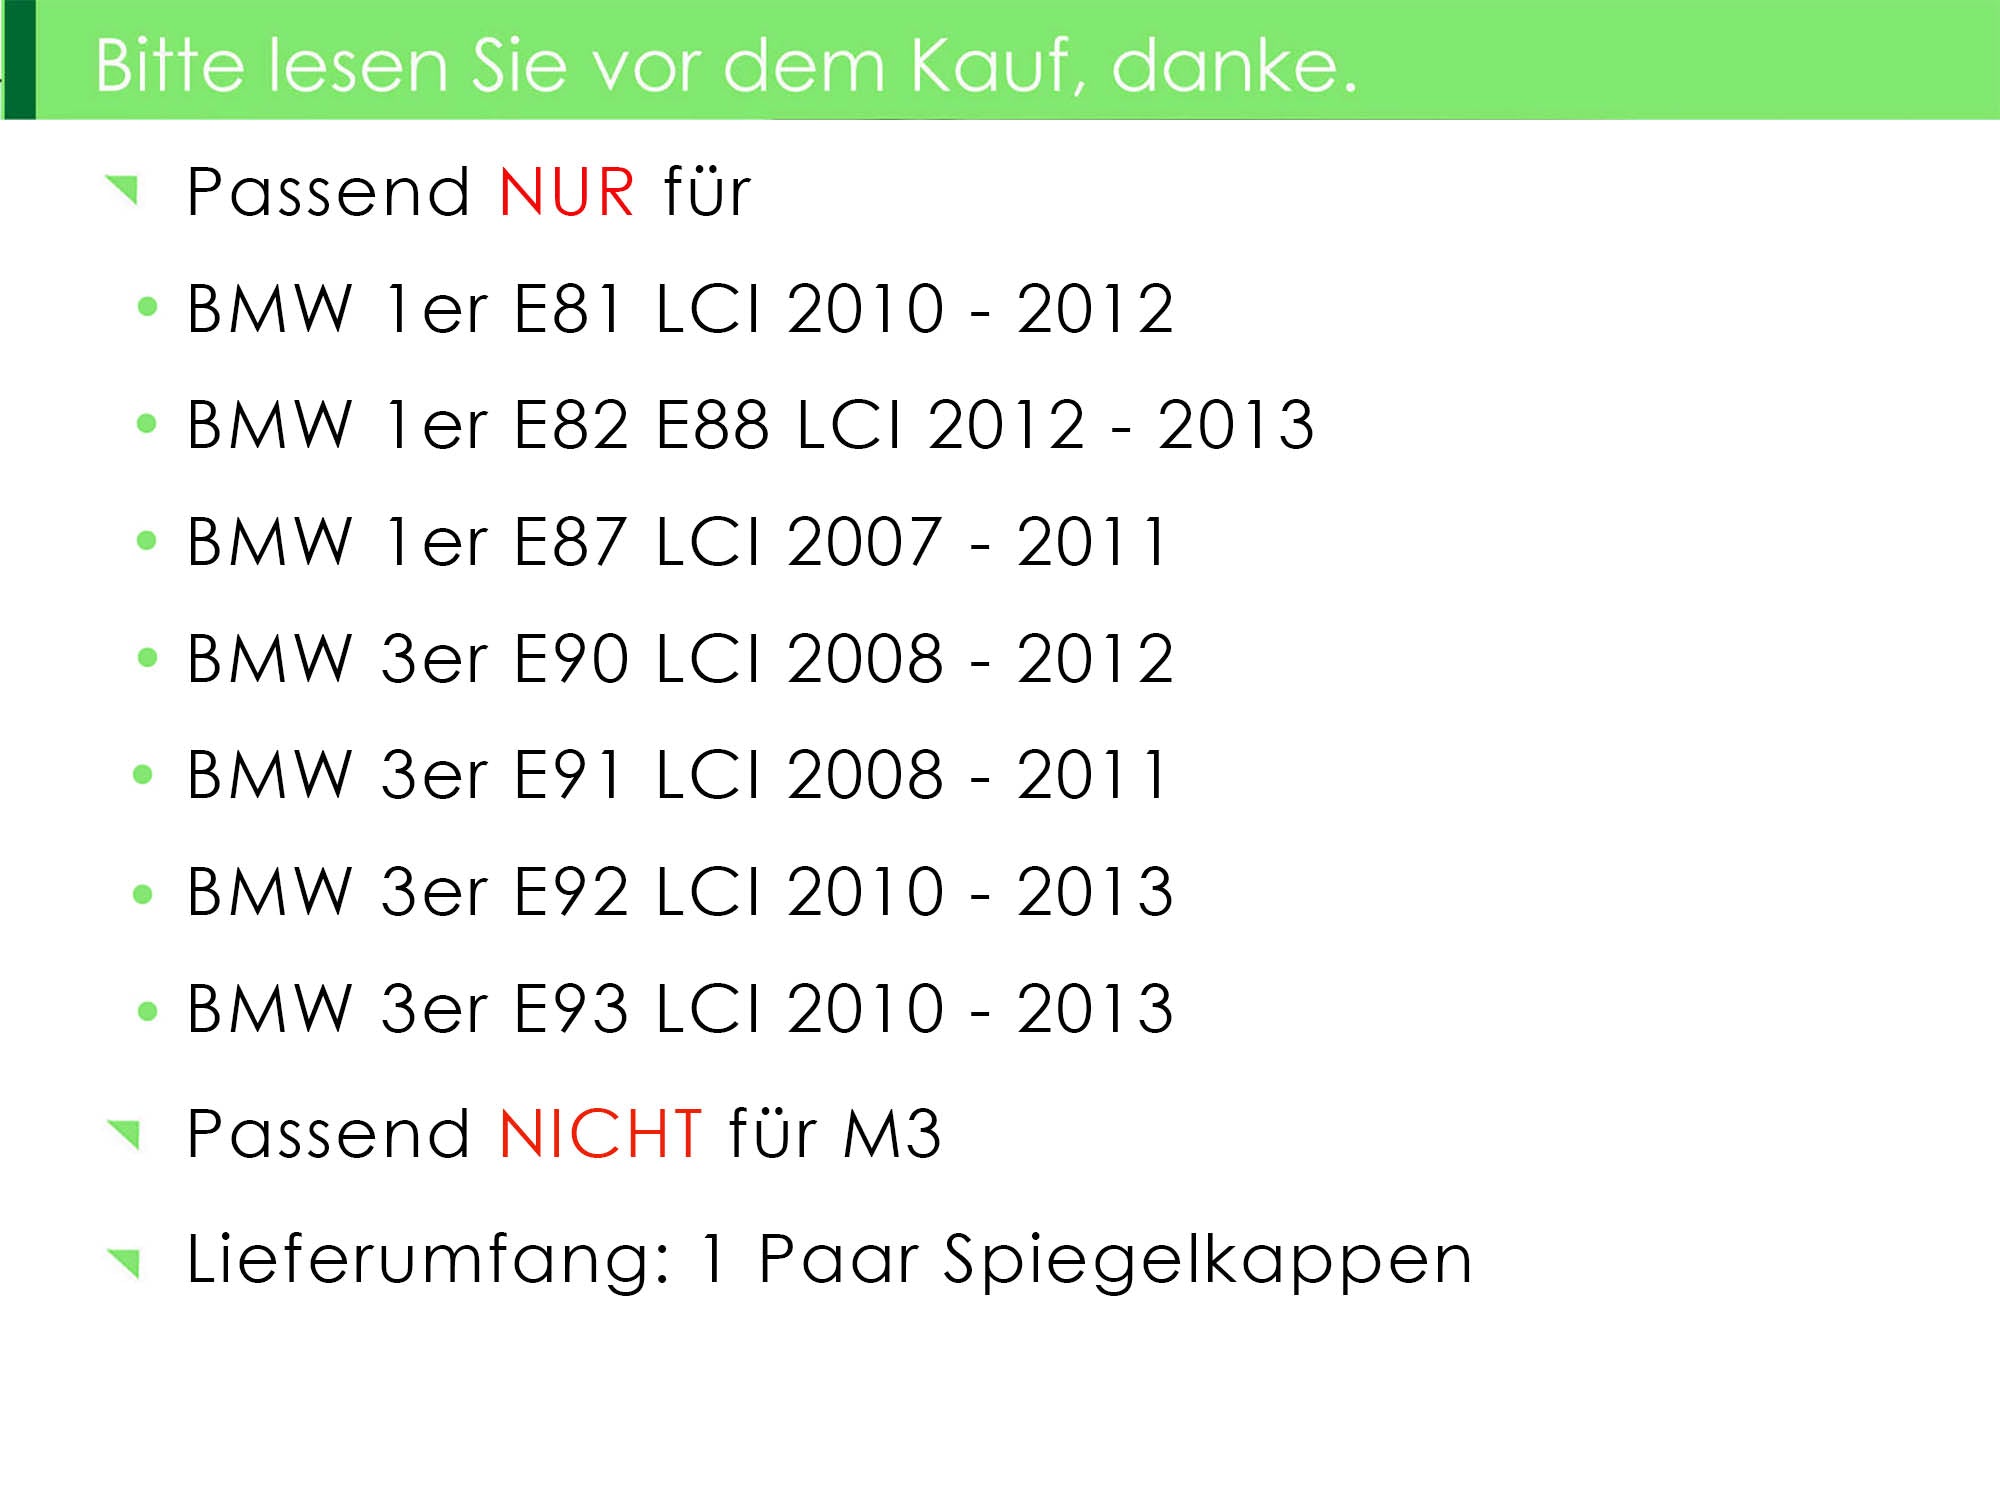 AUßENSPIEGEL KAPPE/GEHÄUSE LACKIERT IN WUNSCHFARBE NEU für BMW 3er E90/E91  2004-2011 –